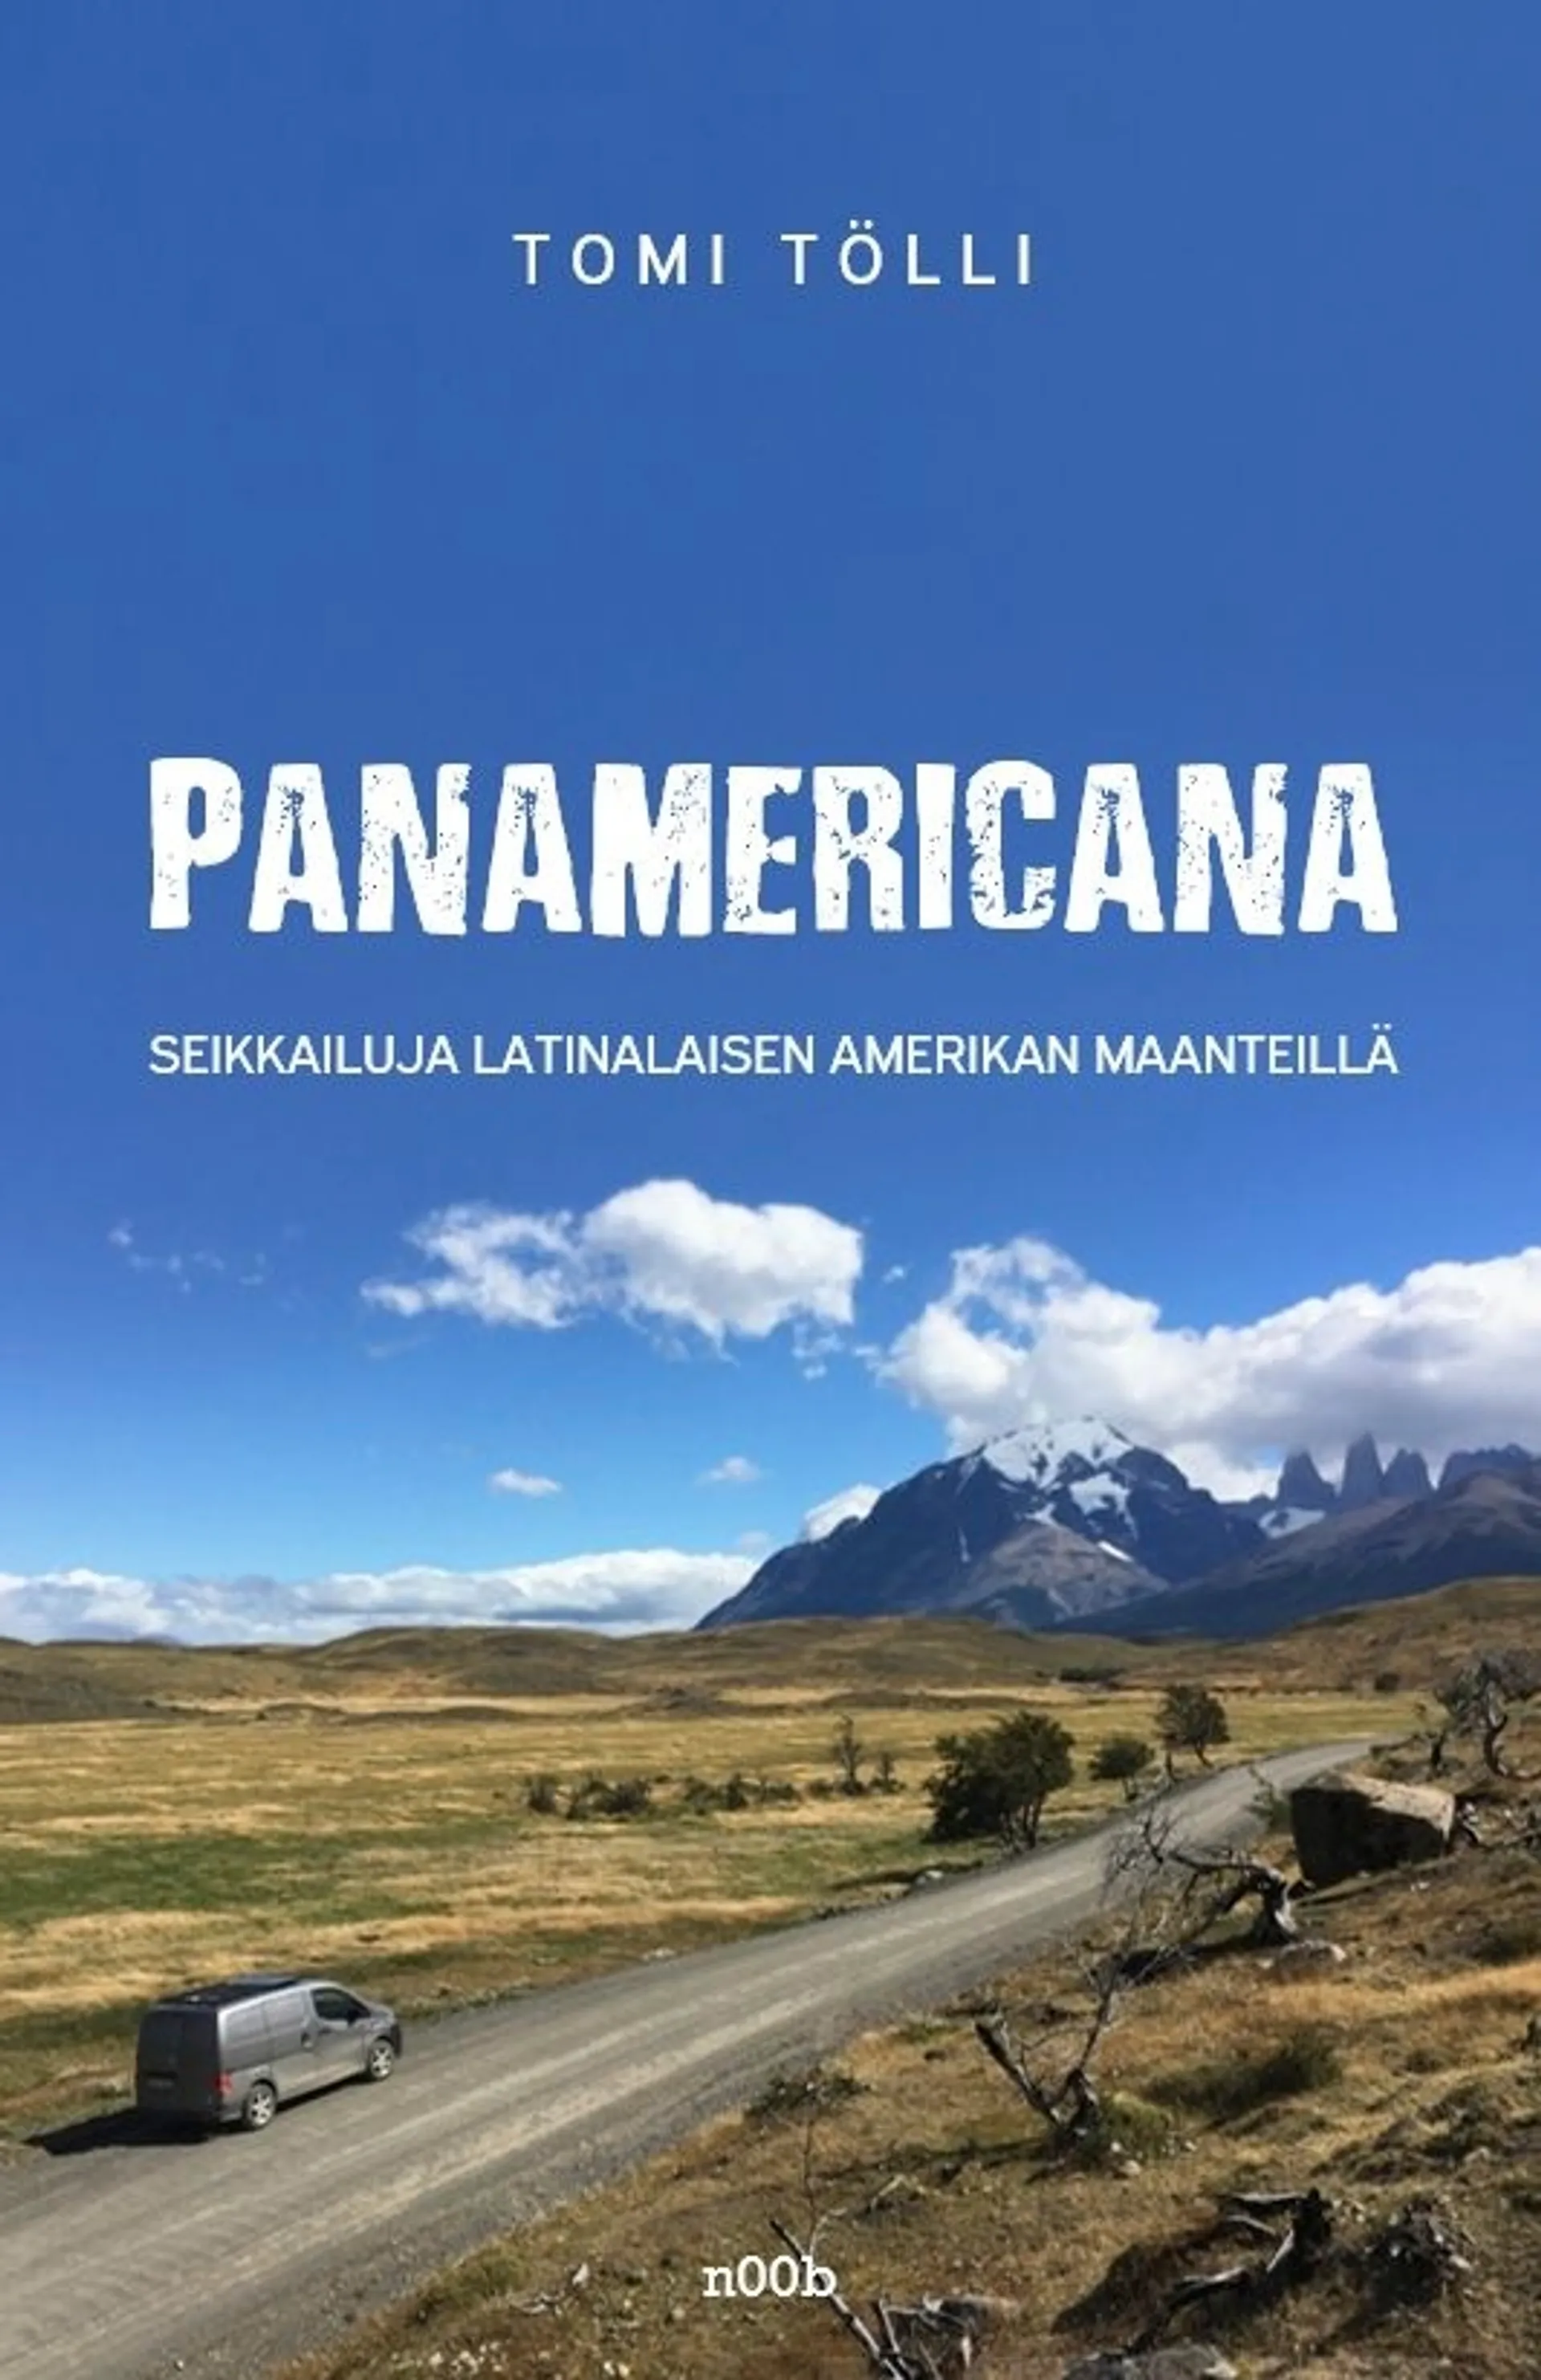 Tölli, Panamericana - Seikkailuja Latinalaisen Amerikan maanteillä